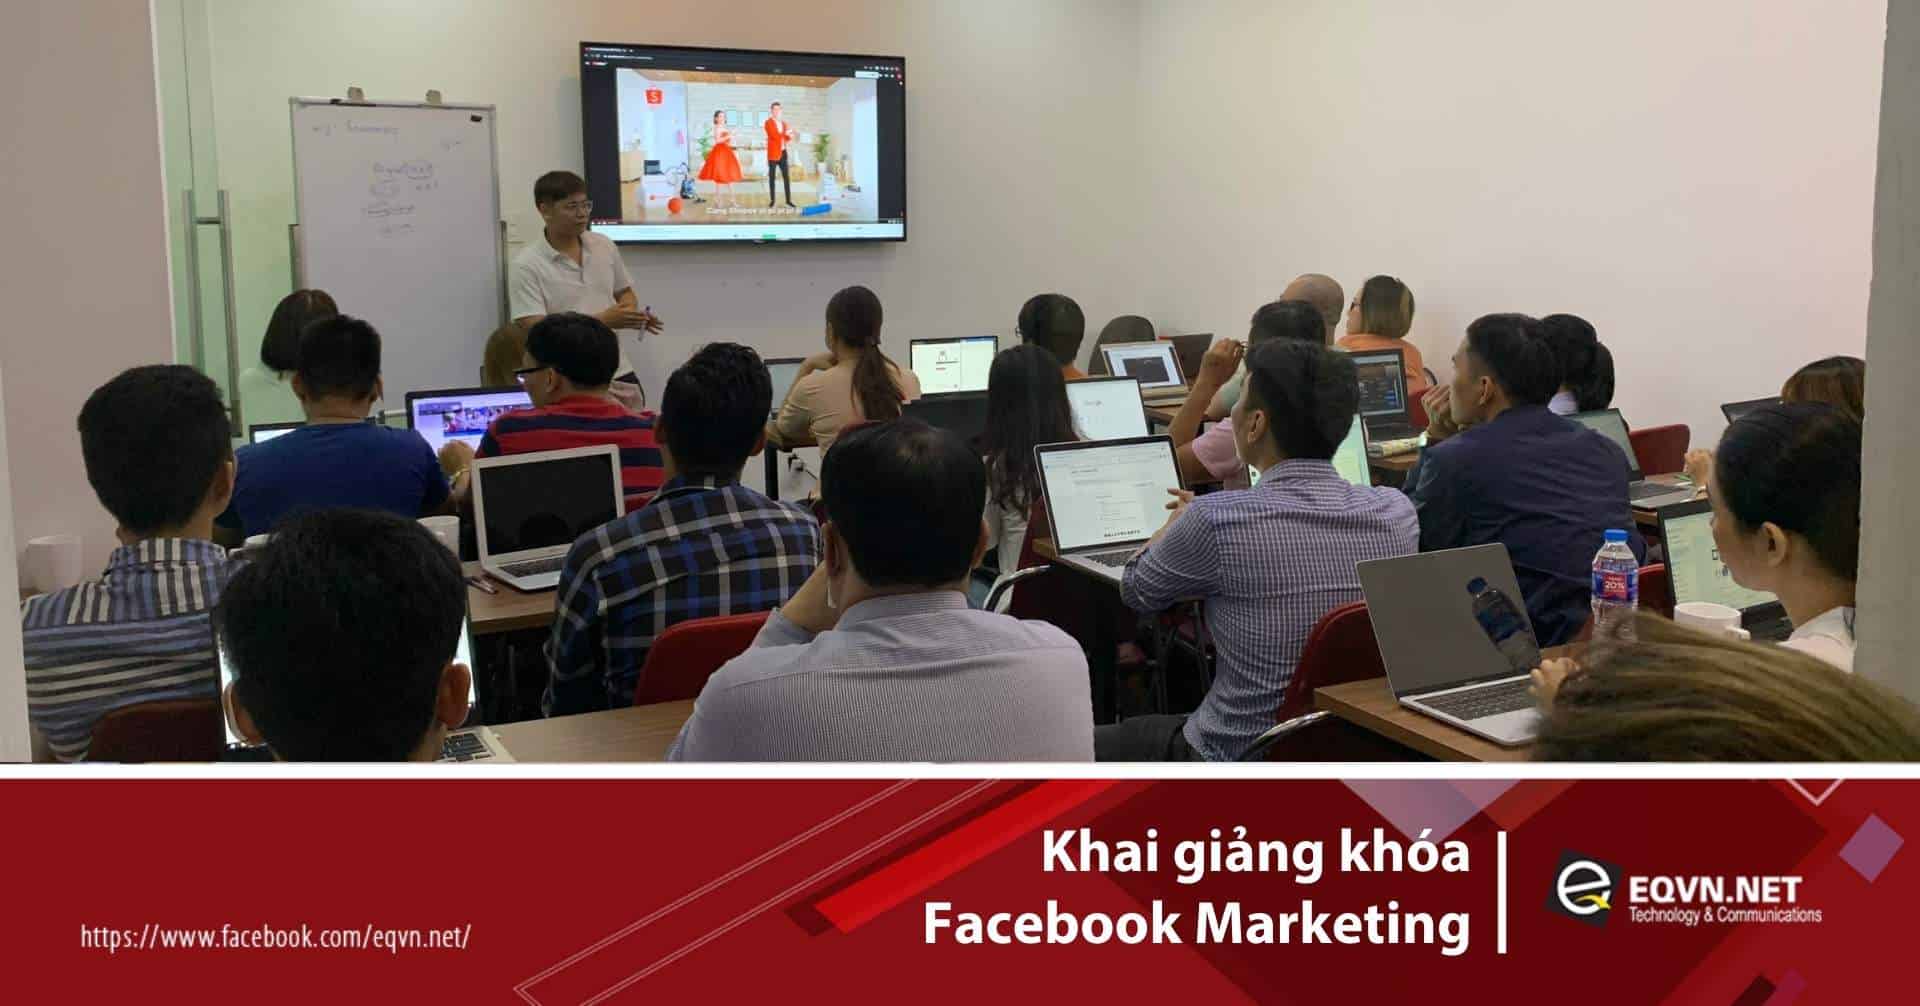 Thầy Phan Bảo hướng dẫn học viên trong lớp Facebook Marketing